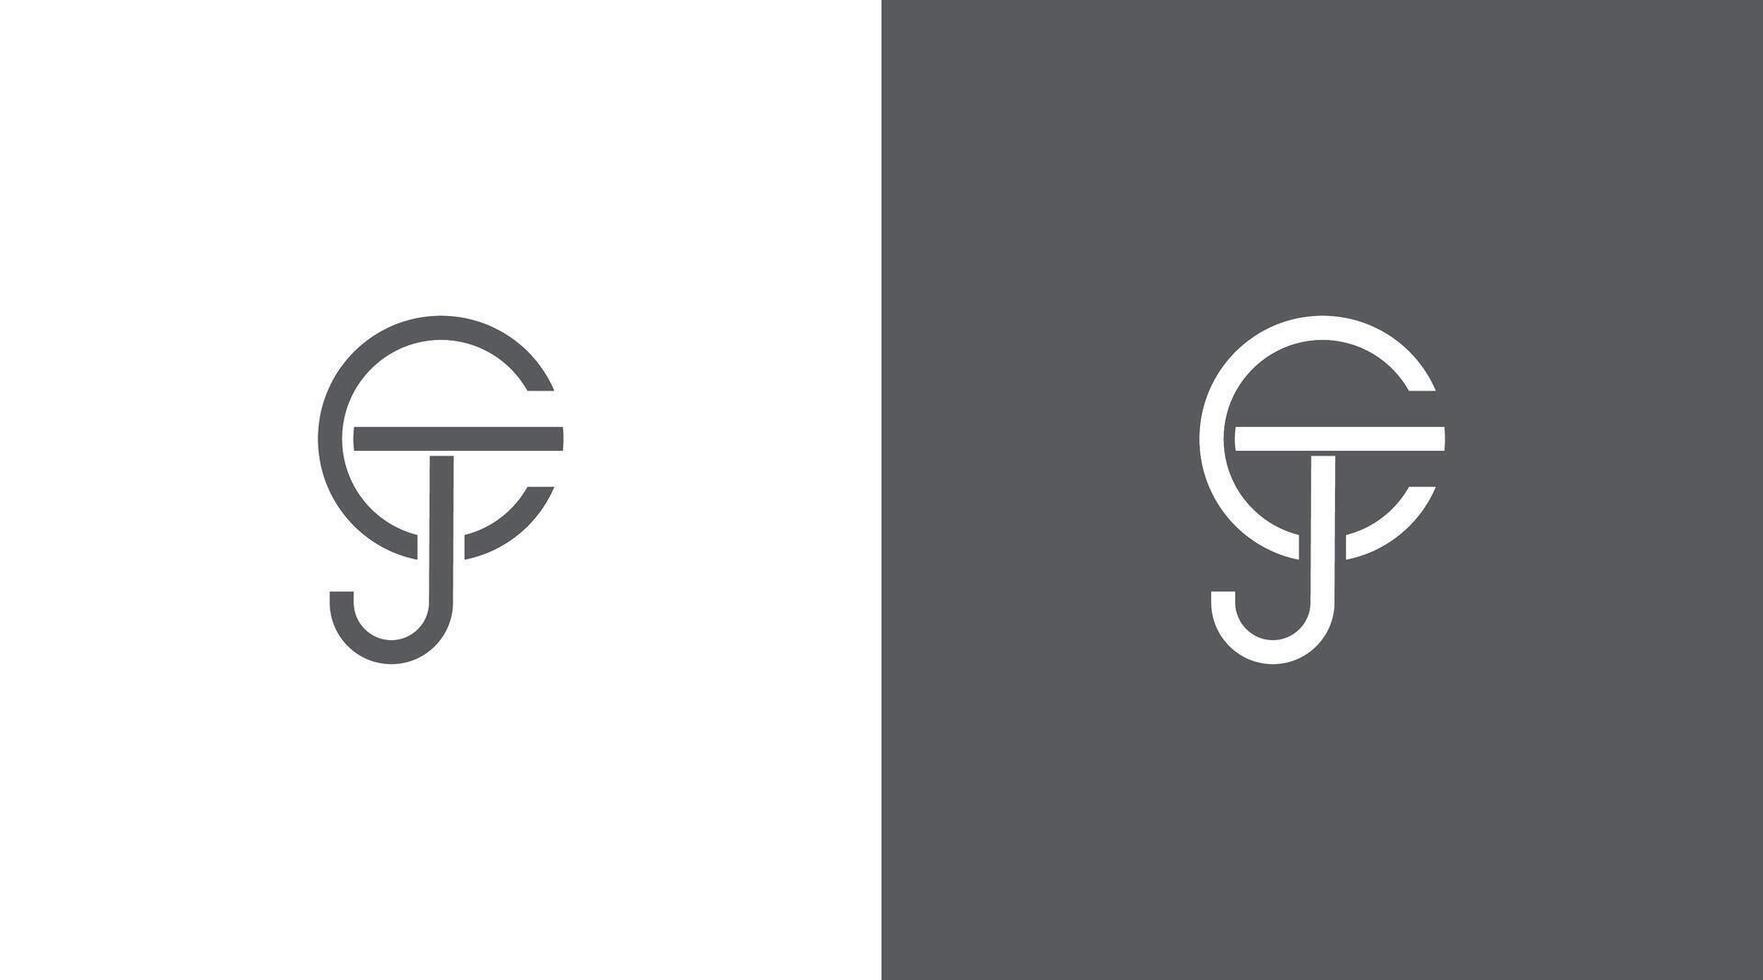 jtc brief logo ontwerp, tcj icoon merk identiteit ontwerp monogram logo minimalistische logo ontwerp ctj 3 brief logo vector